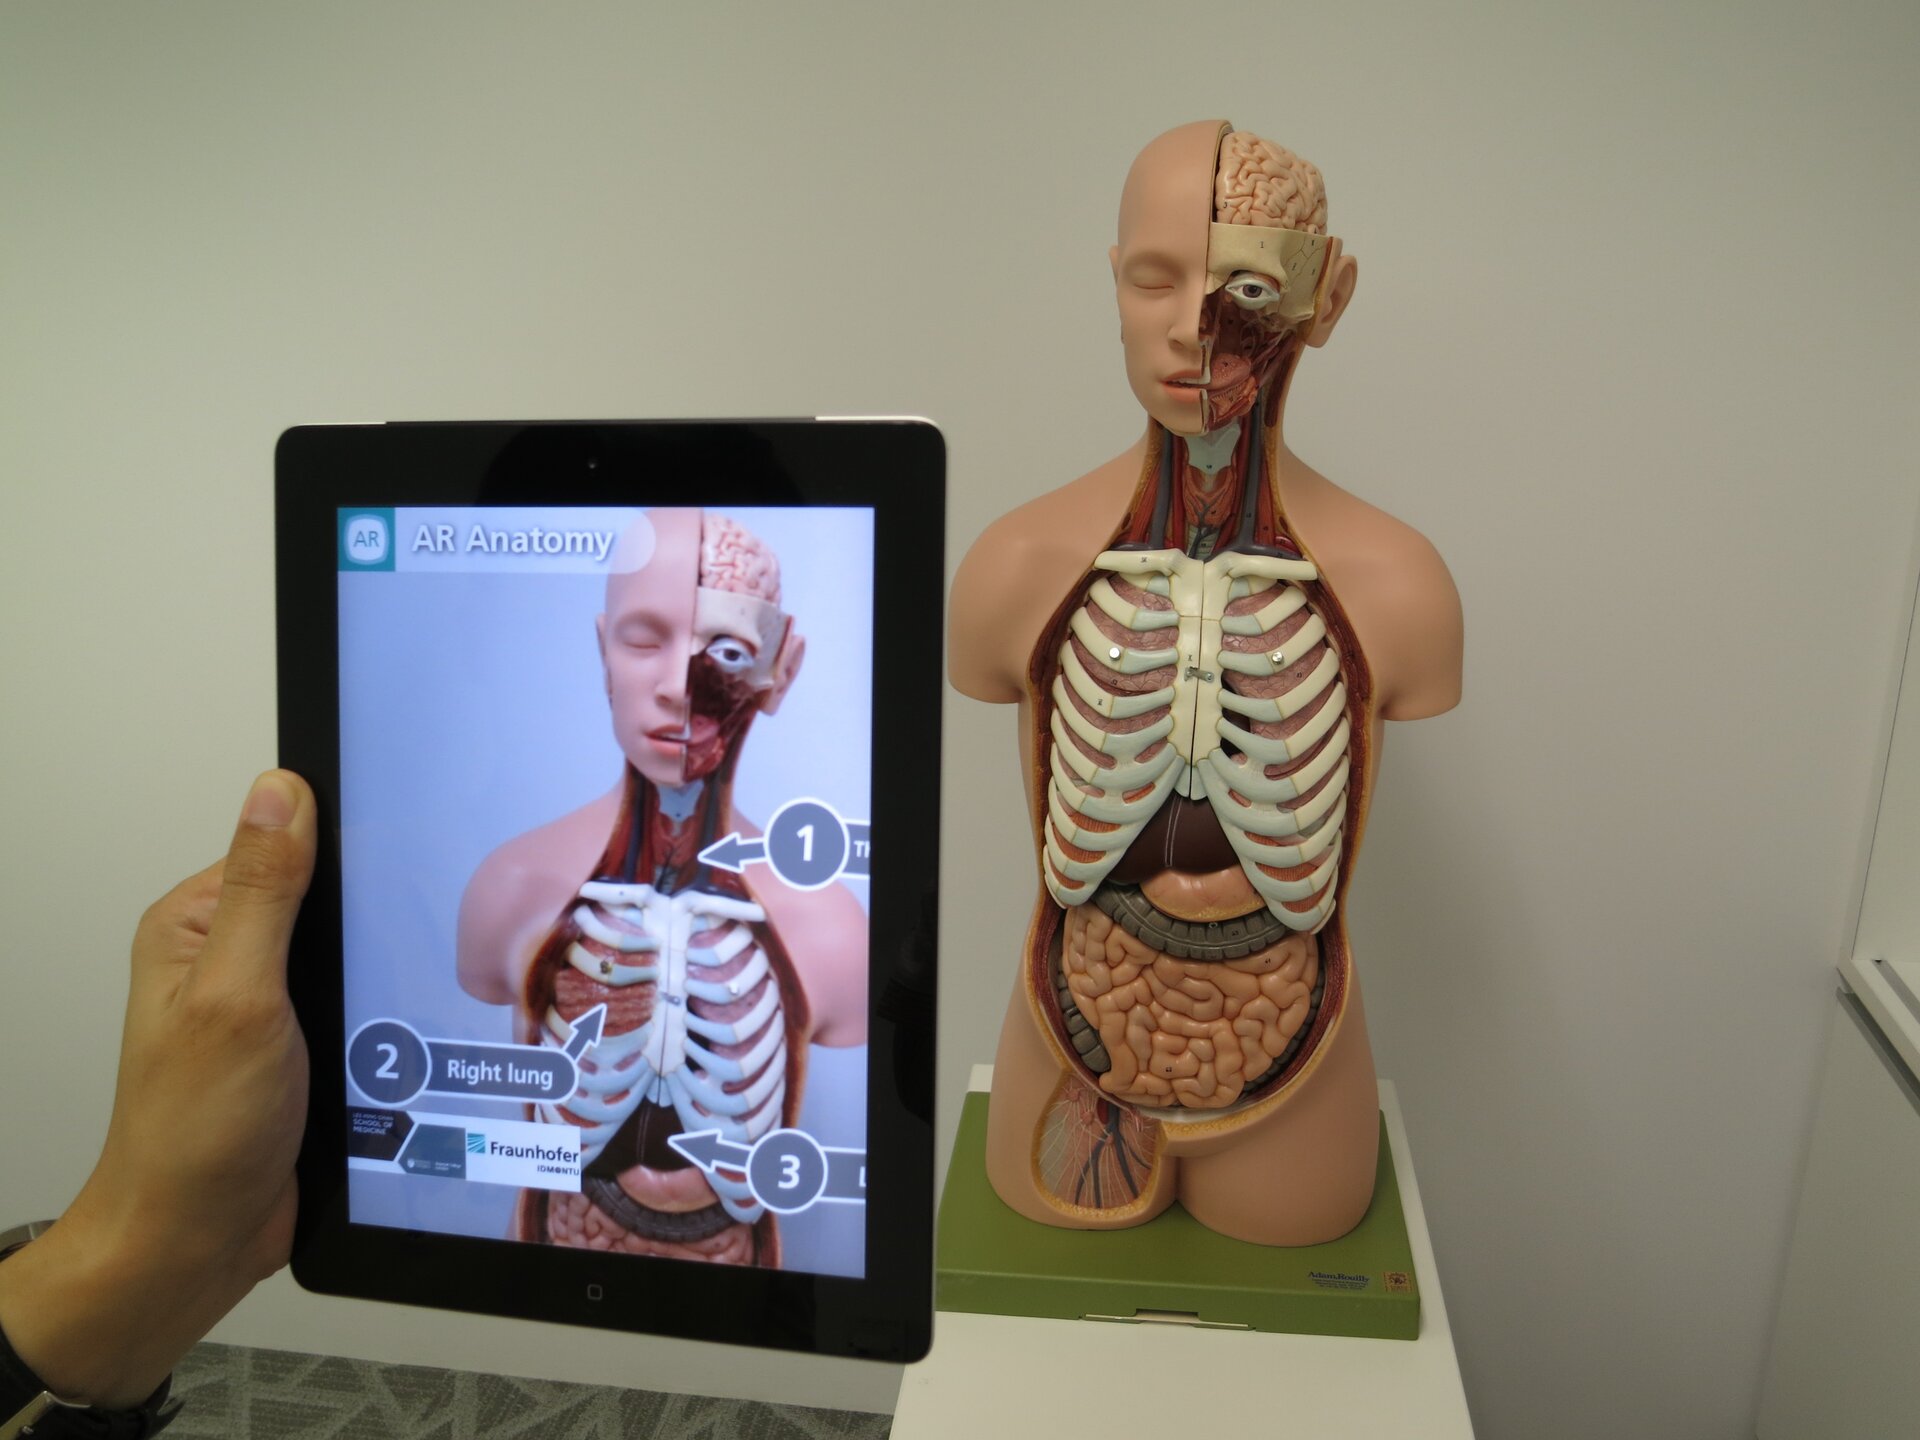 Na zdjęciu znajduje się model anatomiczny człowieka, który jest umiejscowiony na drugim planie fotografii. Na pierwszym planie przedstawiono trzymany przez osobę tablet, na którego ekranie widać wcześniej wspomniany model anatomiczny. Na poglądzie fotograficznym urządzenia znajdują się oznaczenia cyfrowe poszczególnych organów modelu anatomicznego. 